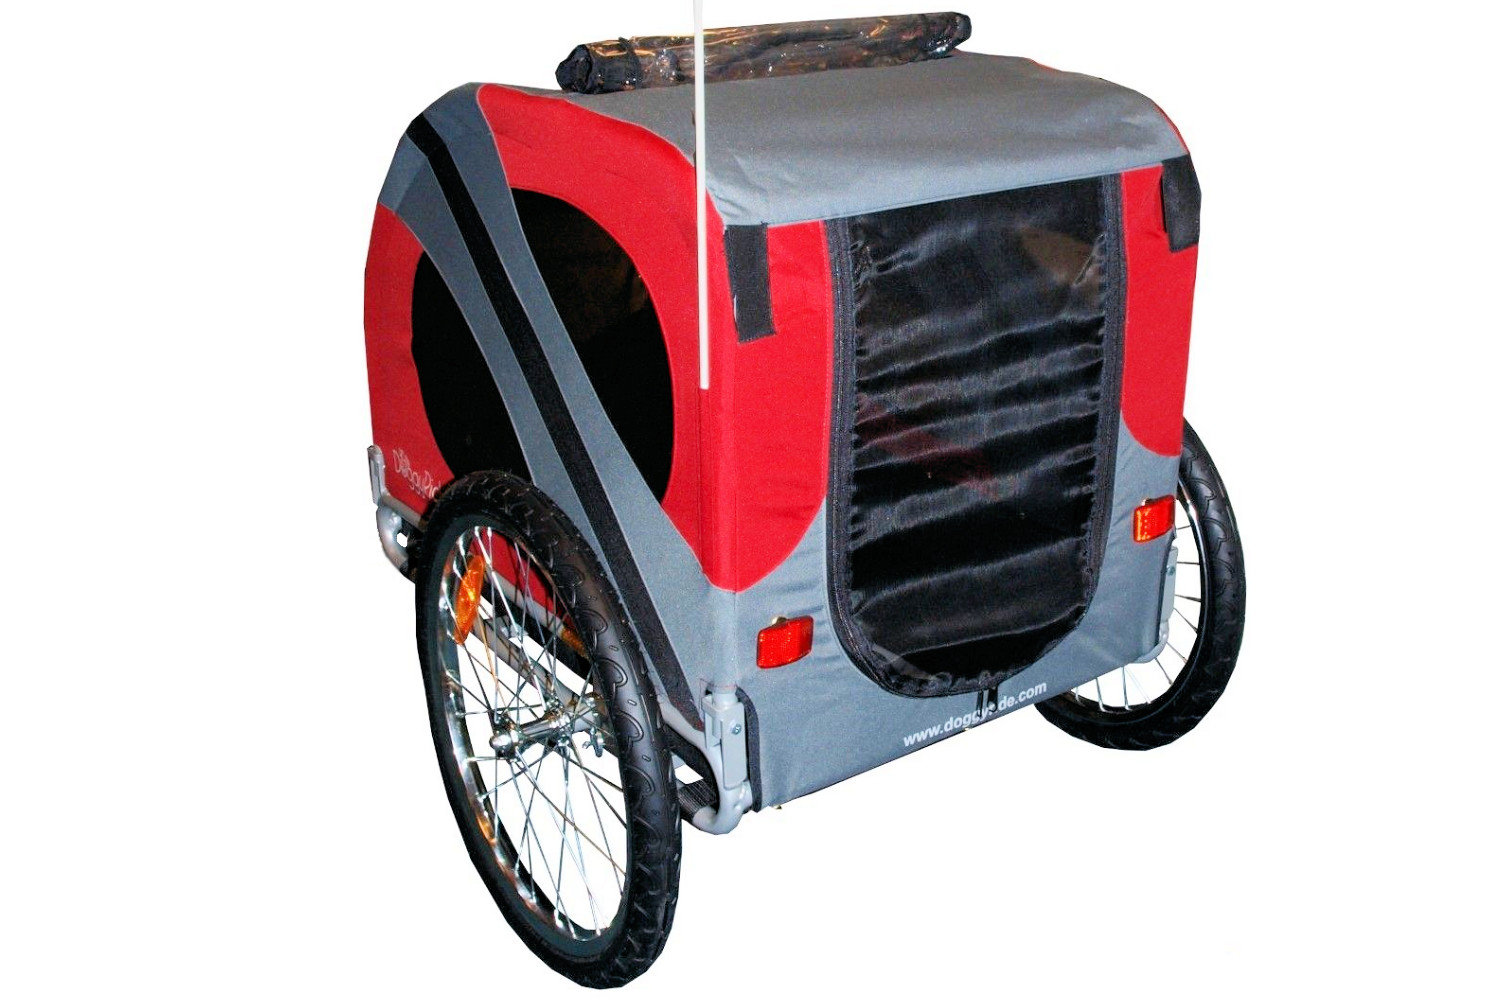 Remorque vélo pour chien DoggyRide Novel20 Trailer rouge - Britch Lite  accouplement porte-bagages